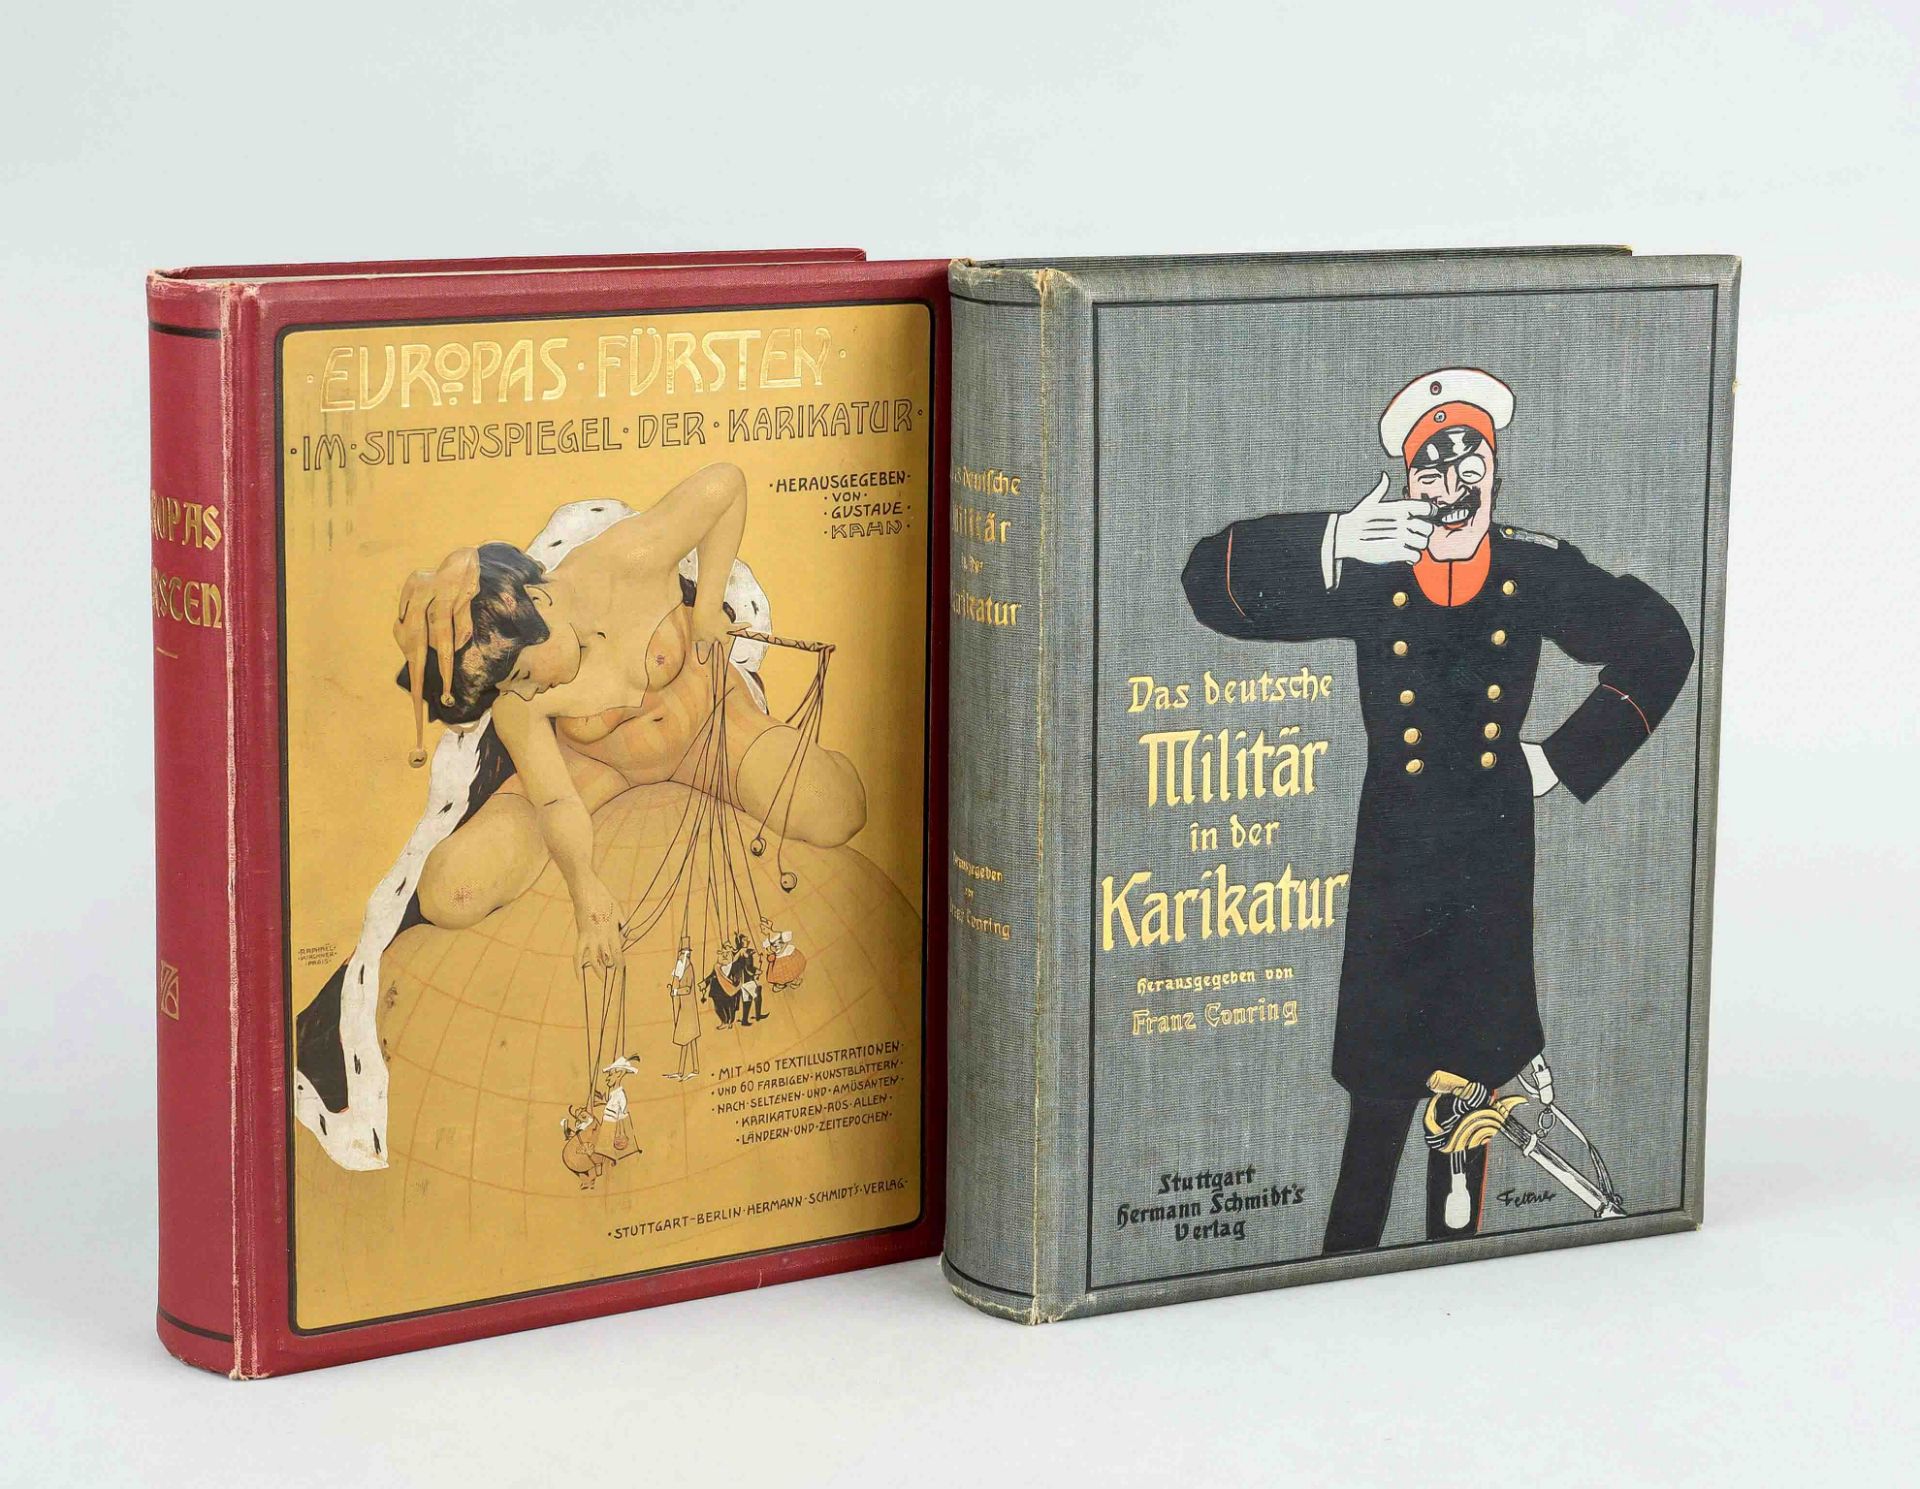 2 volumes on the subject of caricature: 1 x Europas Fürsten im Sittenspiegel der Karikatur, ed. by